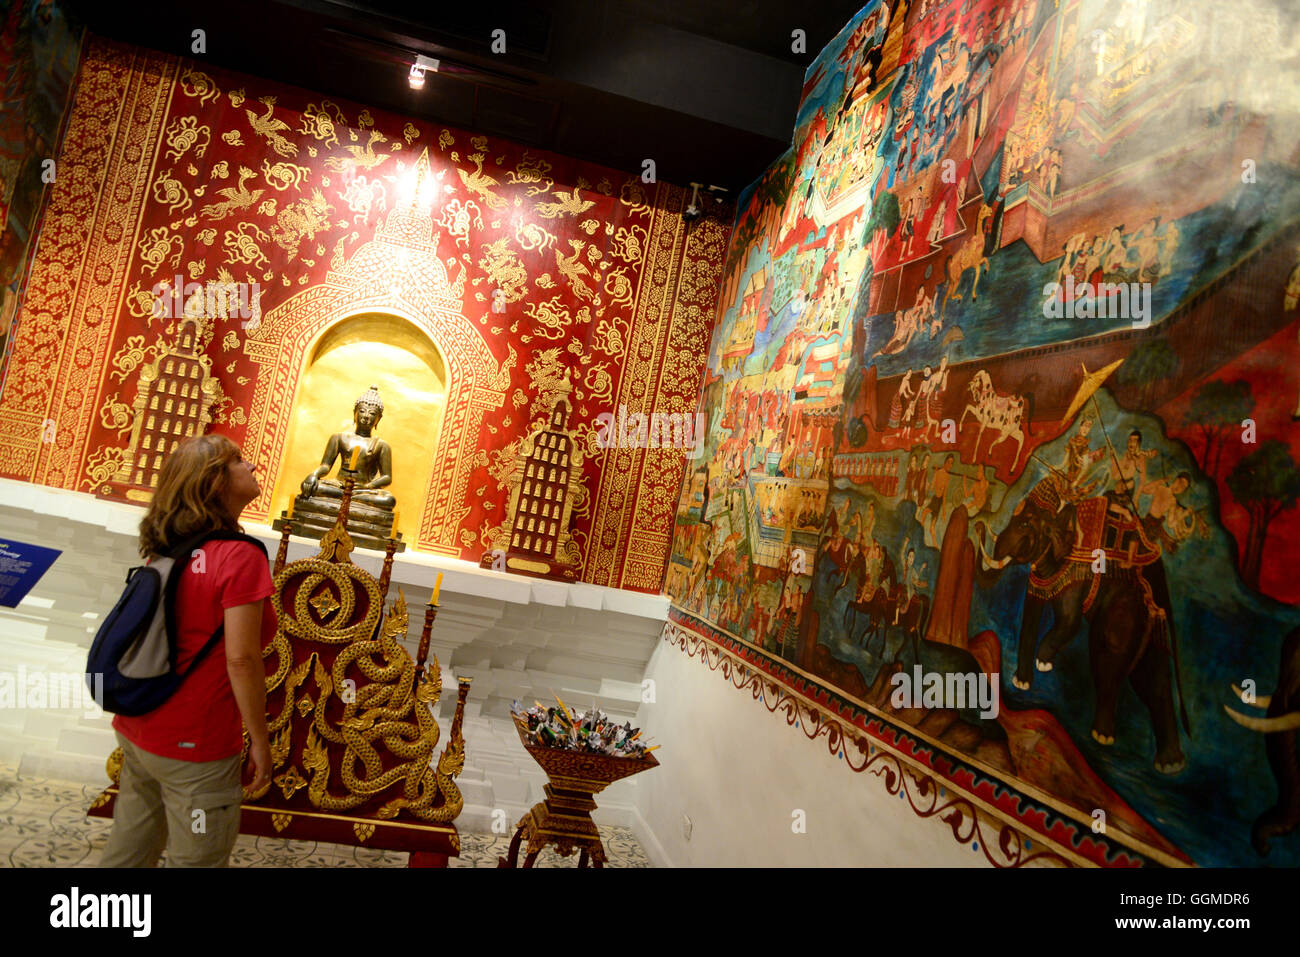 Musée de la vie populaire Lanna, Chiang Mai, Thaïlande, North-Thailand Banque D'Images